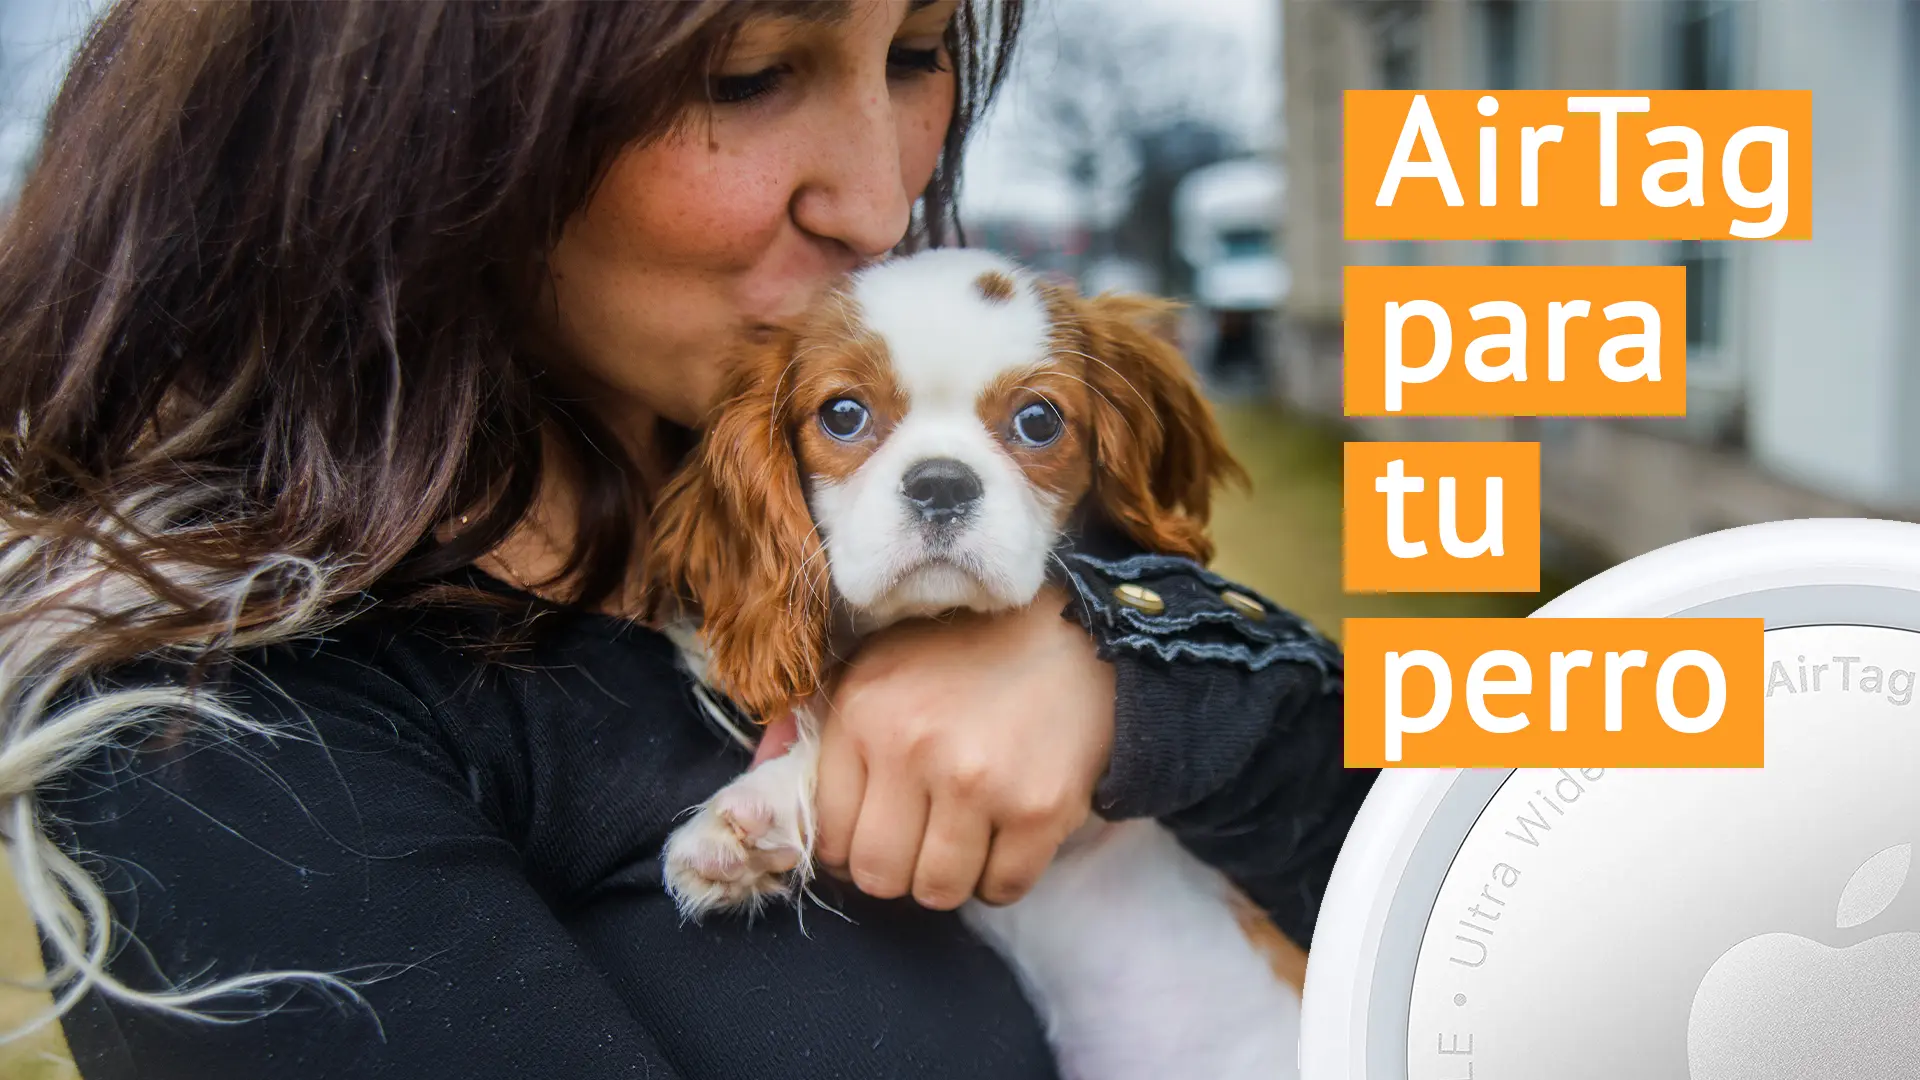 Ponle un AirTag a tu perro y tendrás la seguridad de localizarlo siempre